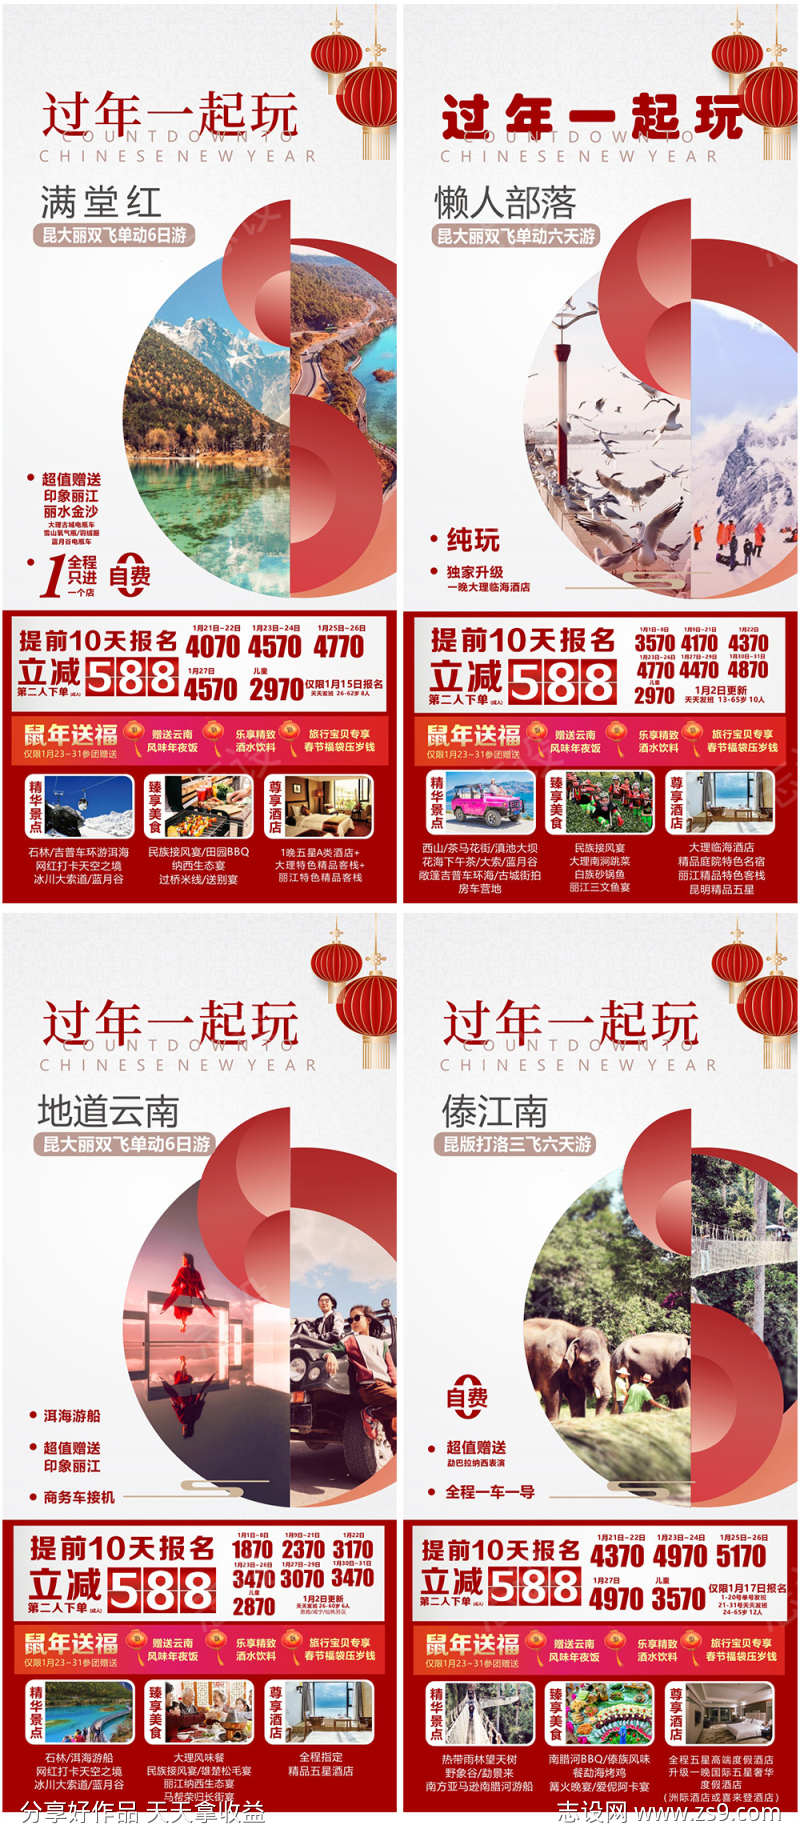 云南旅游系列海报广告